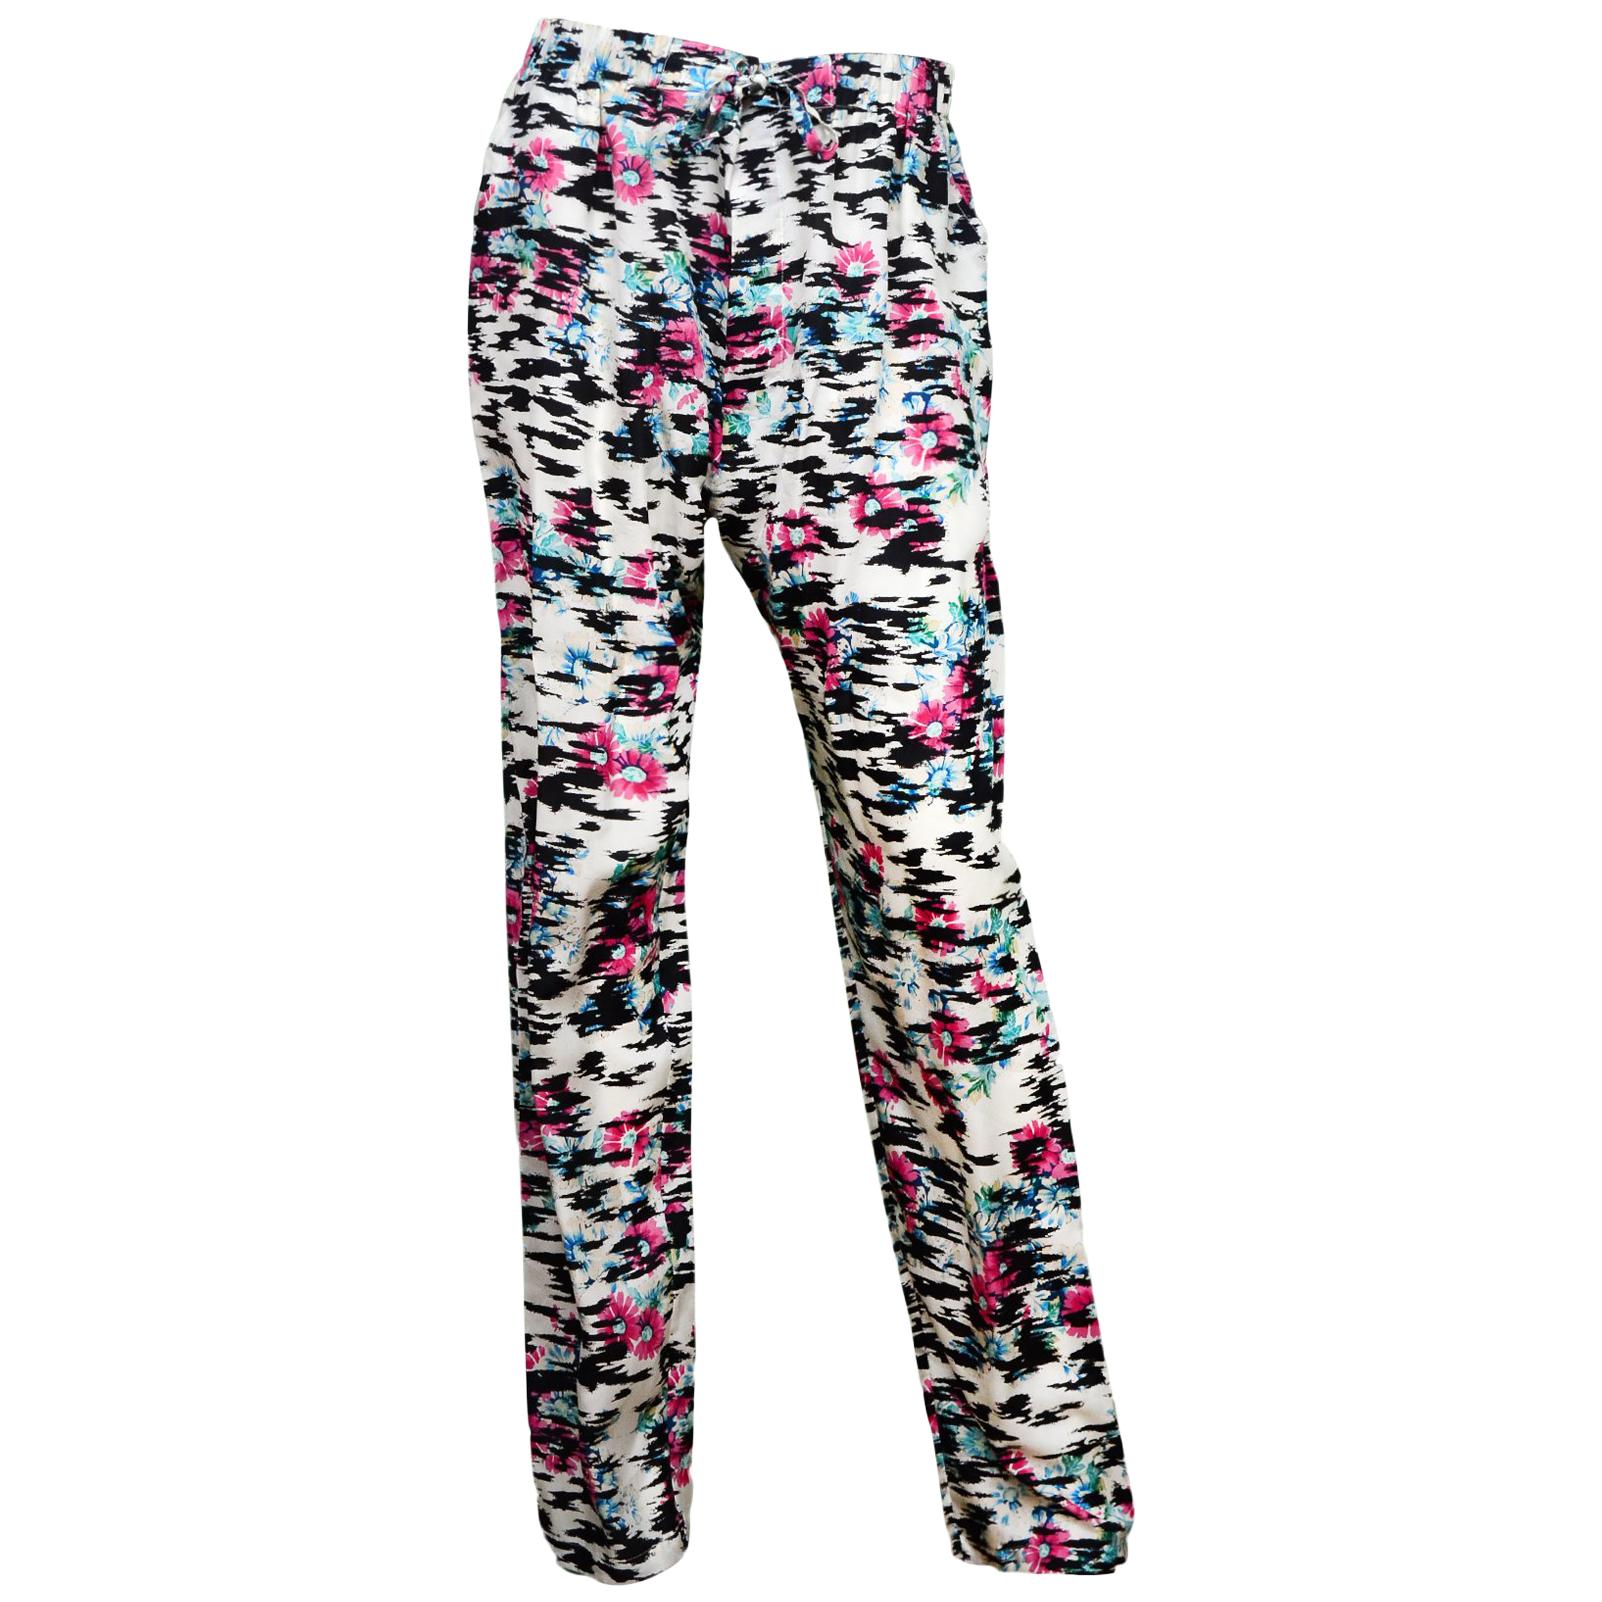 Balenciaga Black/White Silk Pants W/ Pink Flowers Sz 34